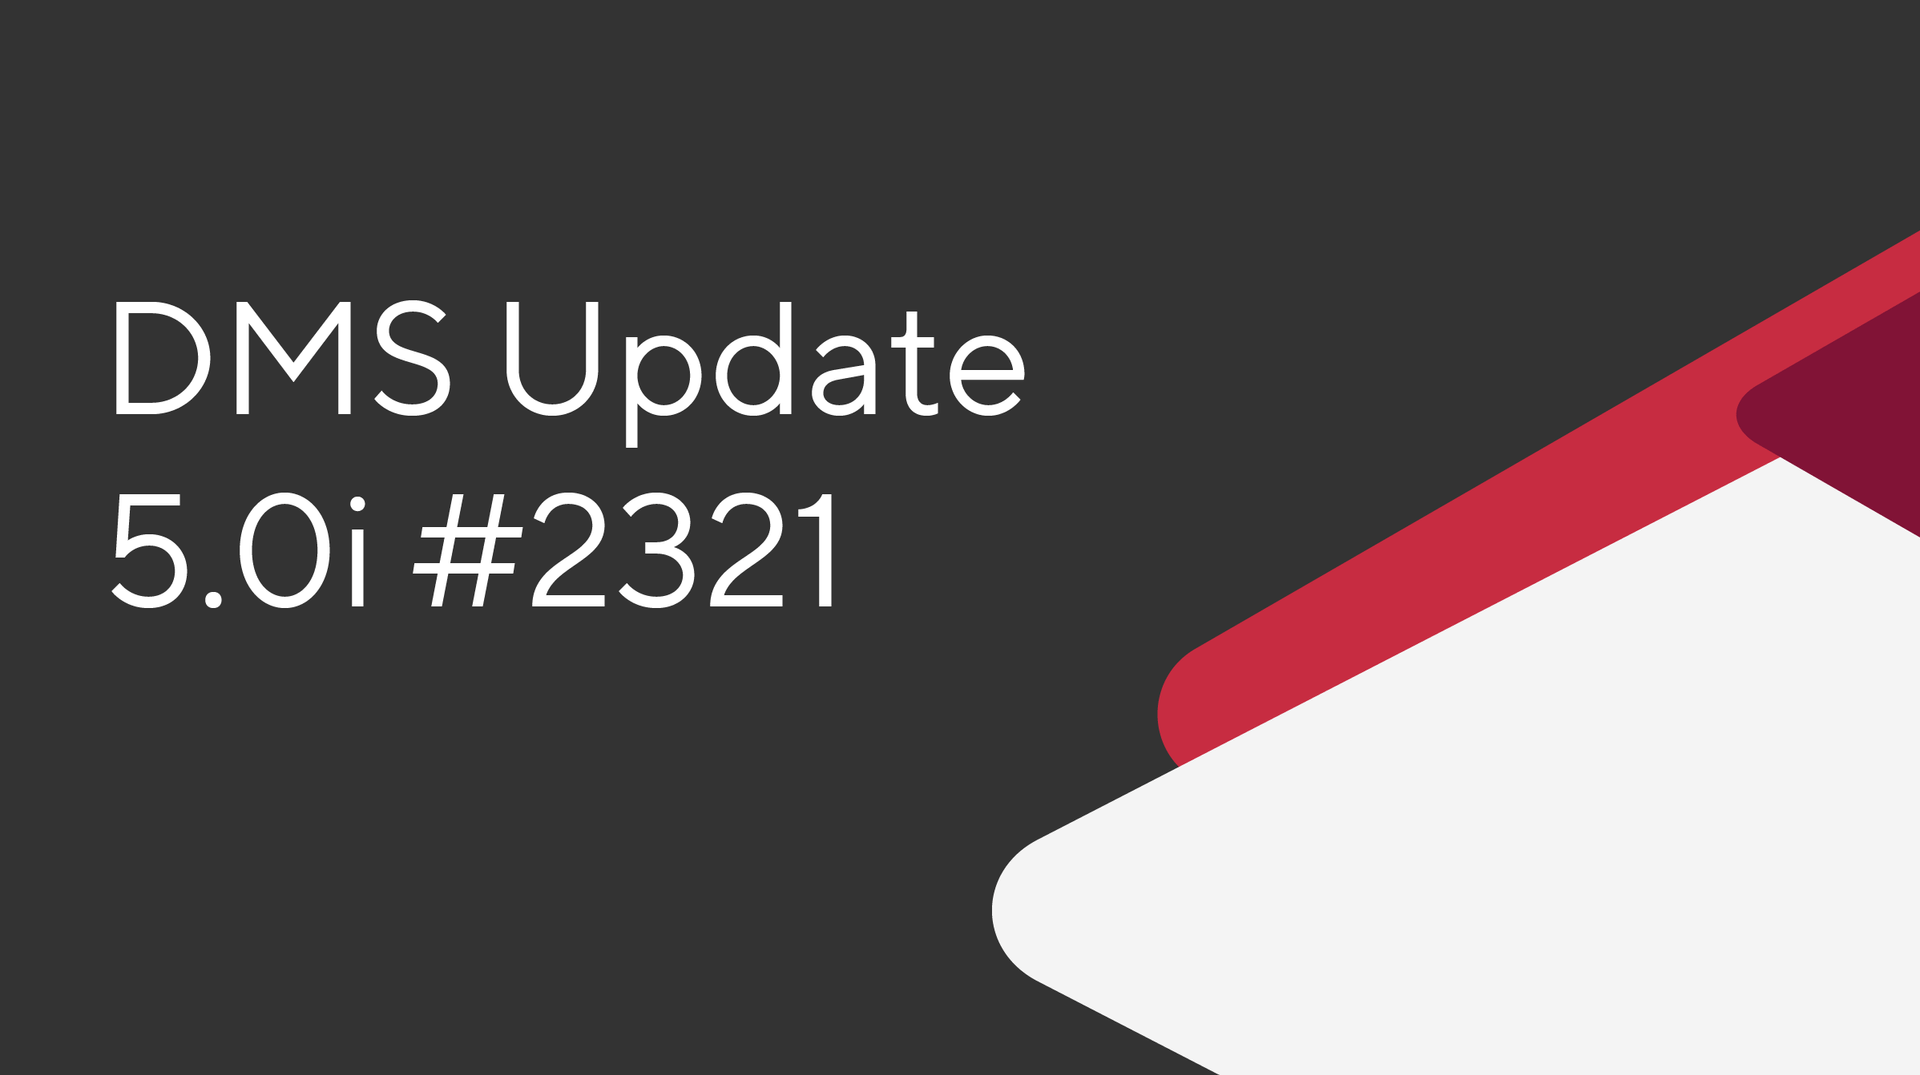 DMS Update 5.0i #2321